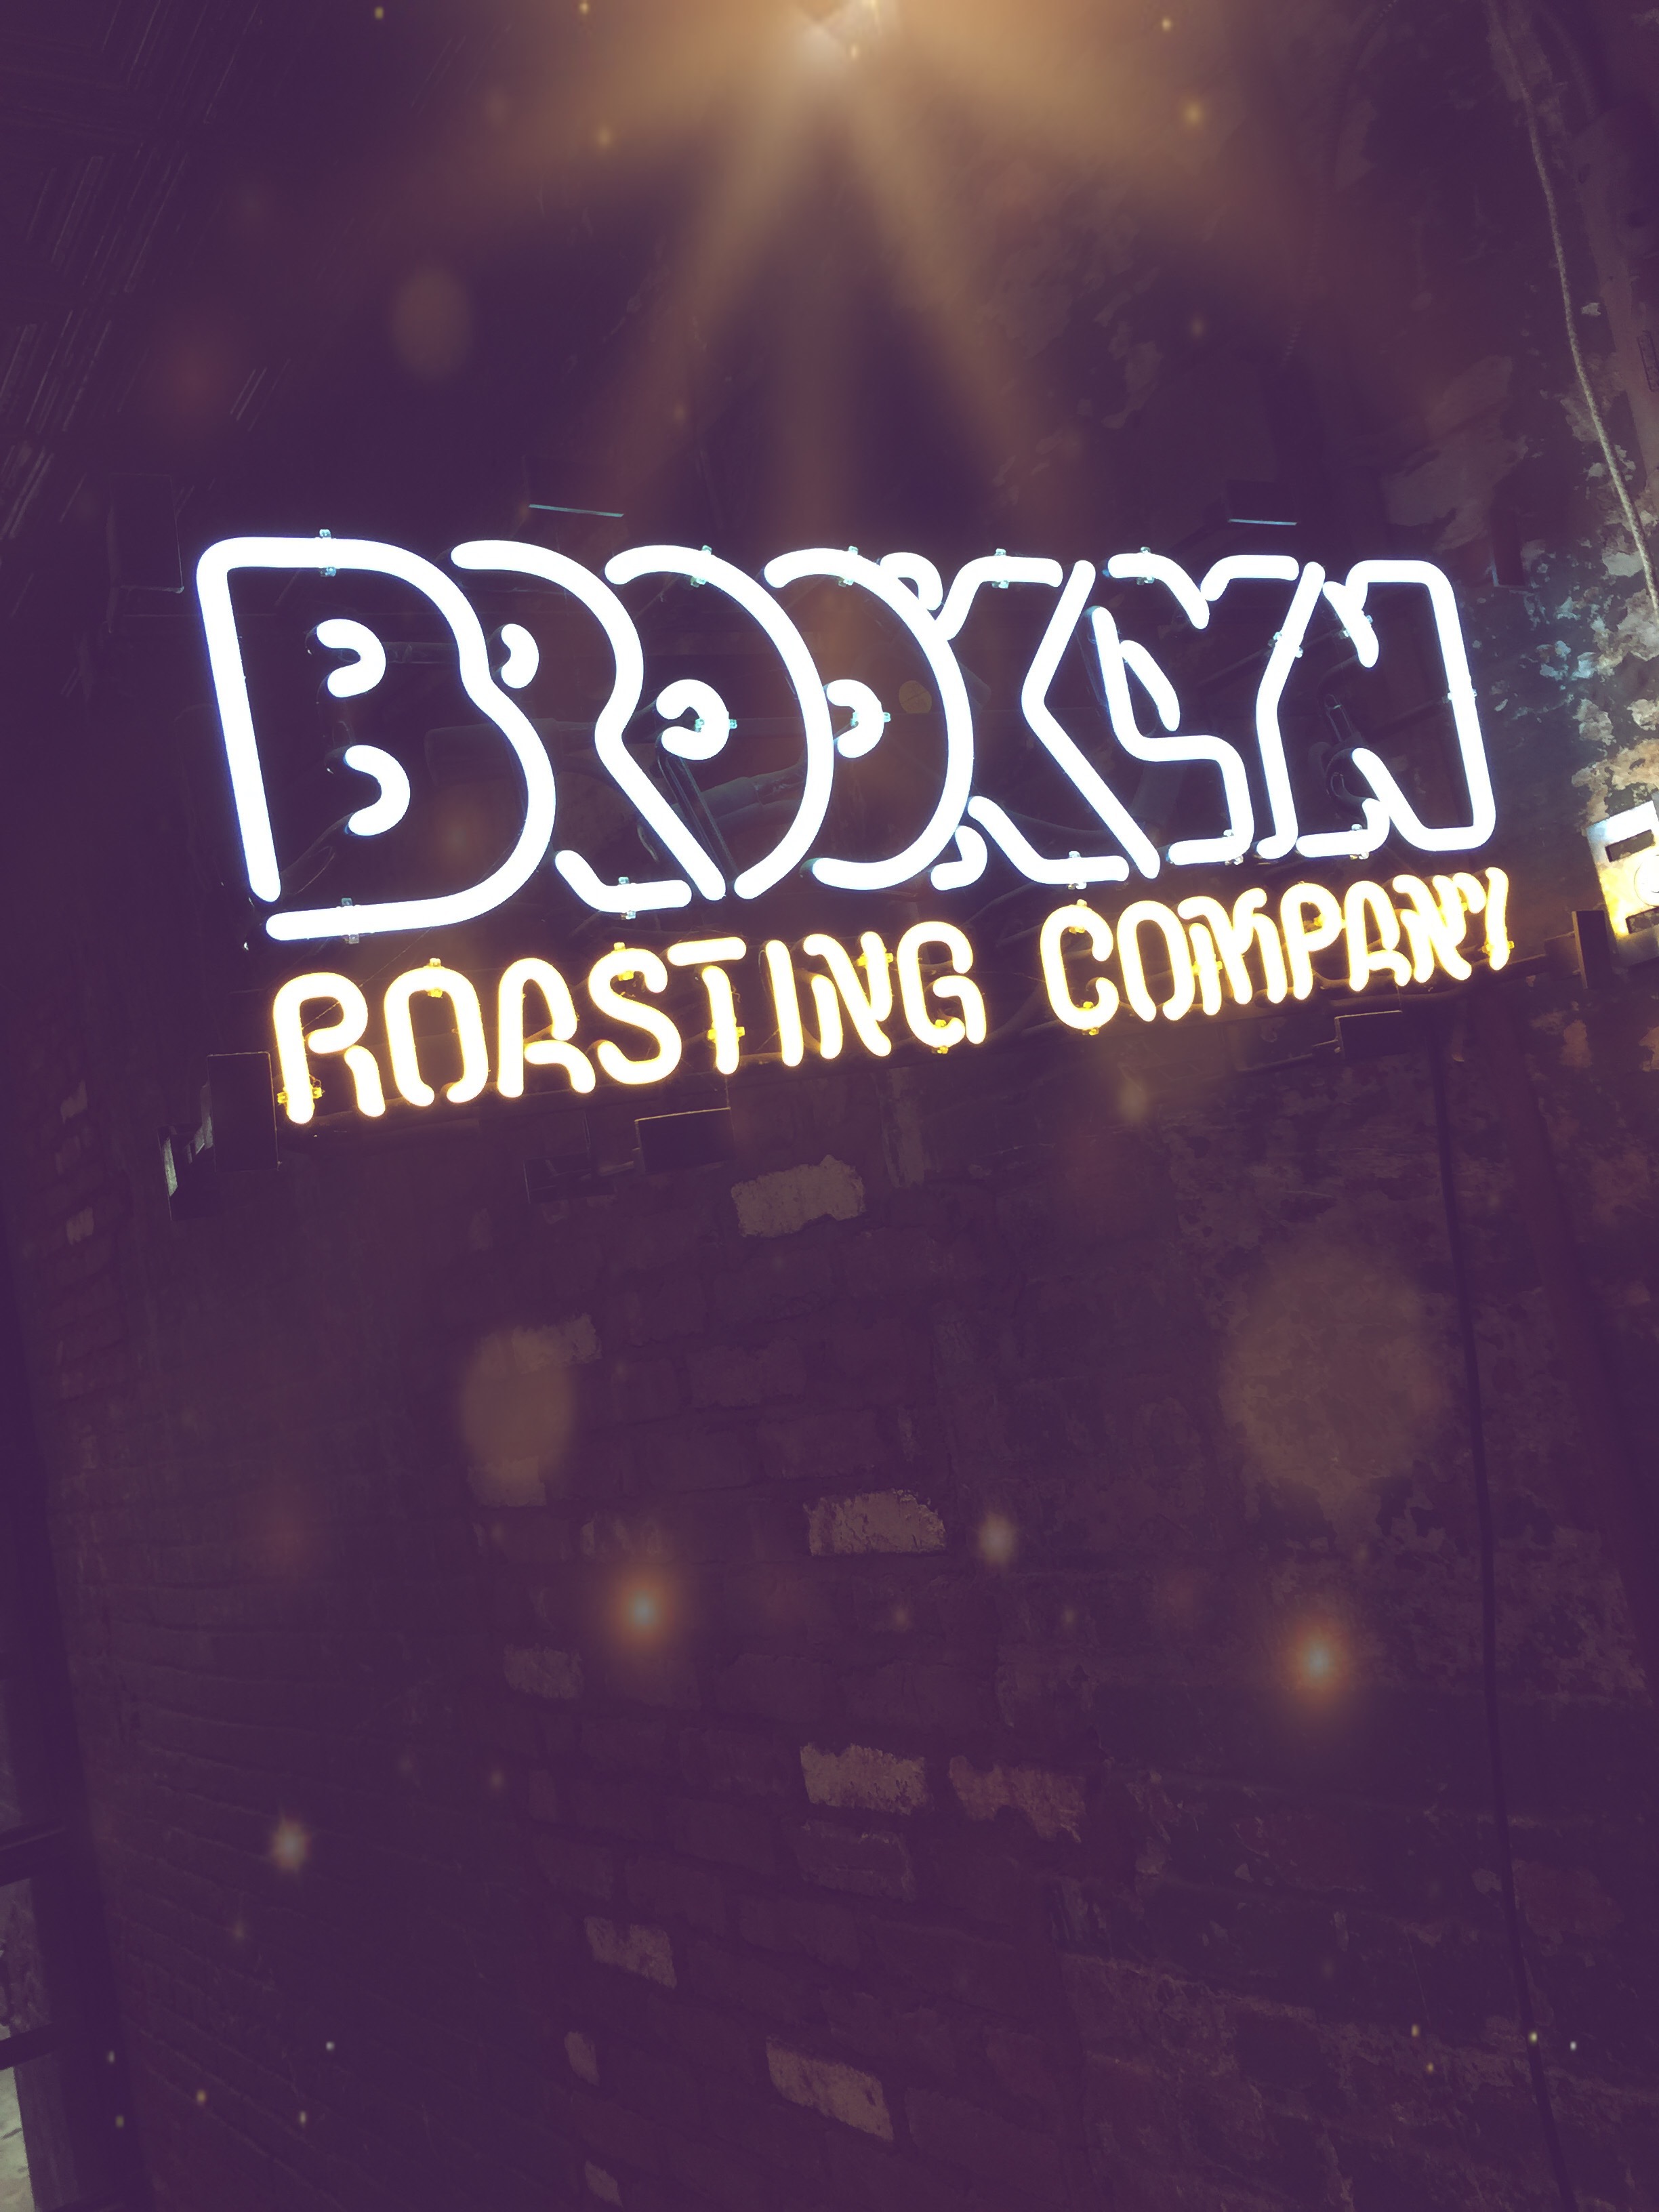 night - Boxsa Roasting Company